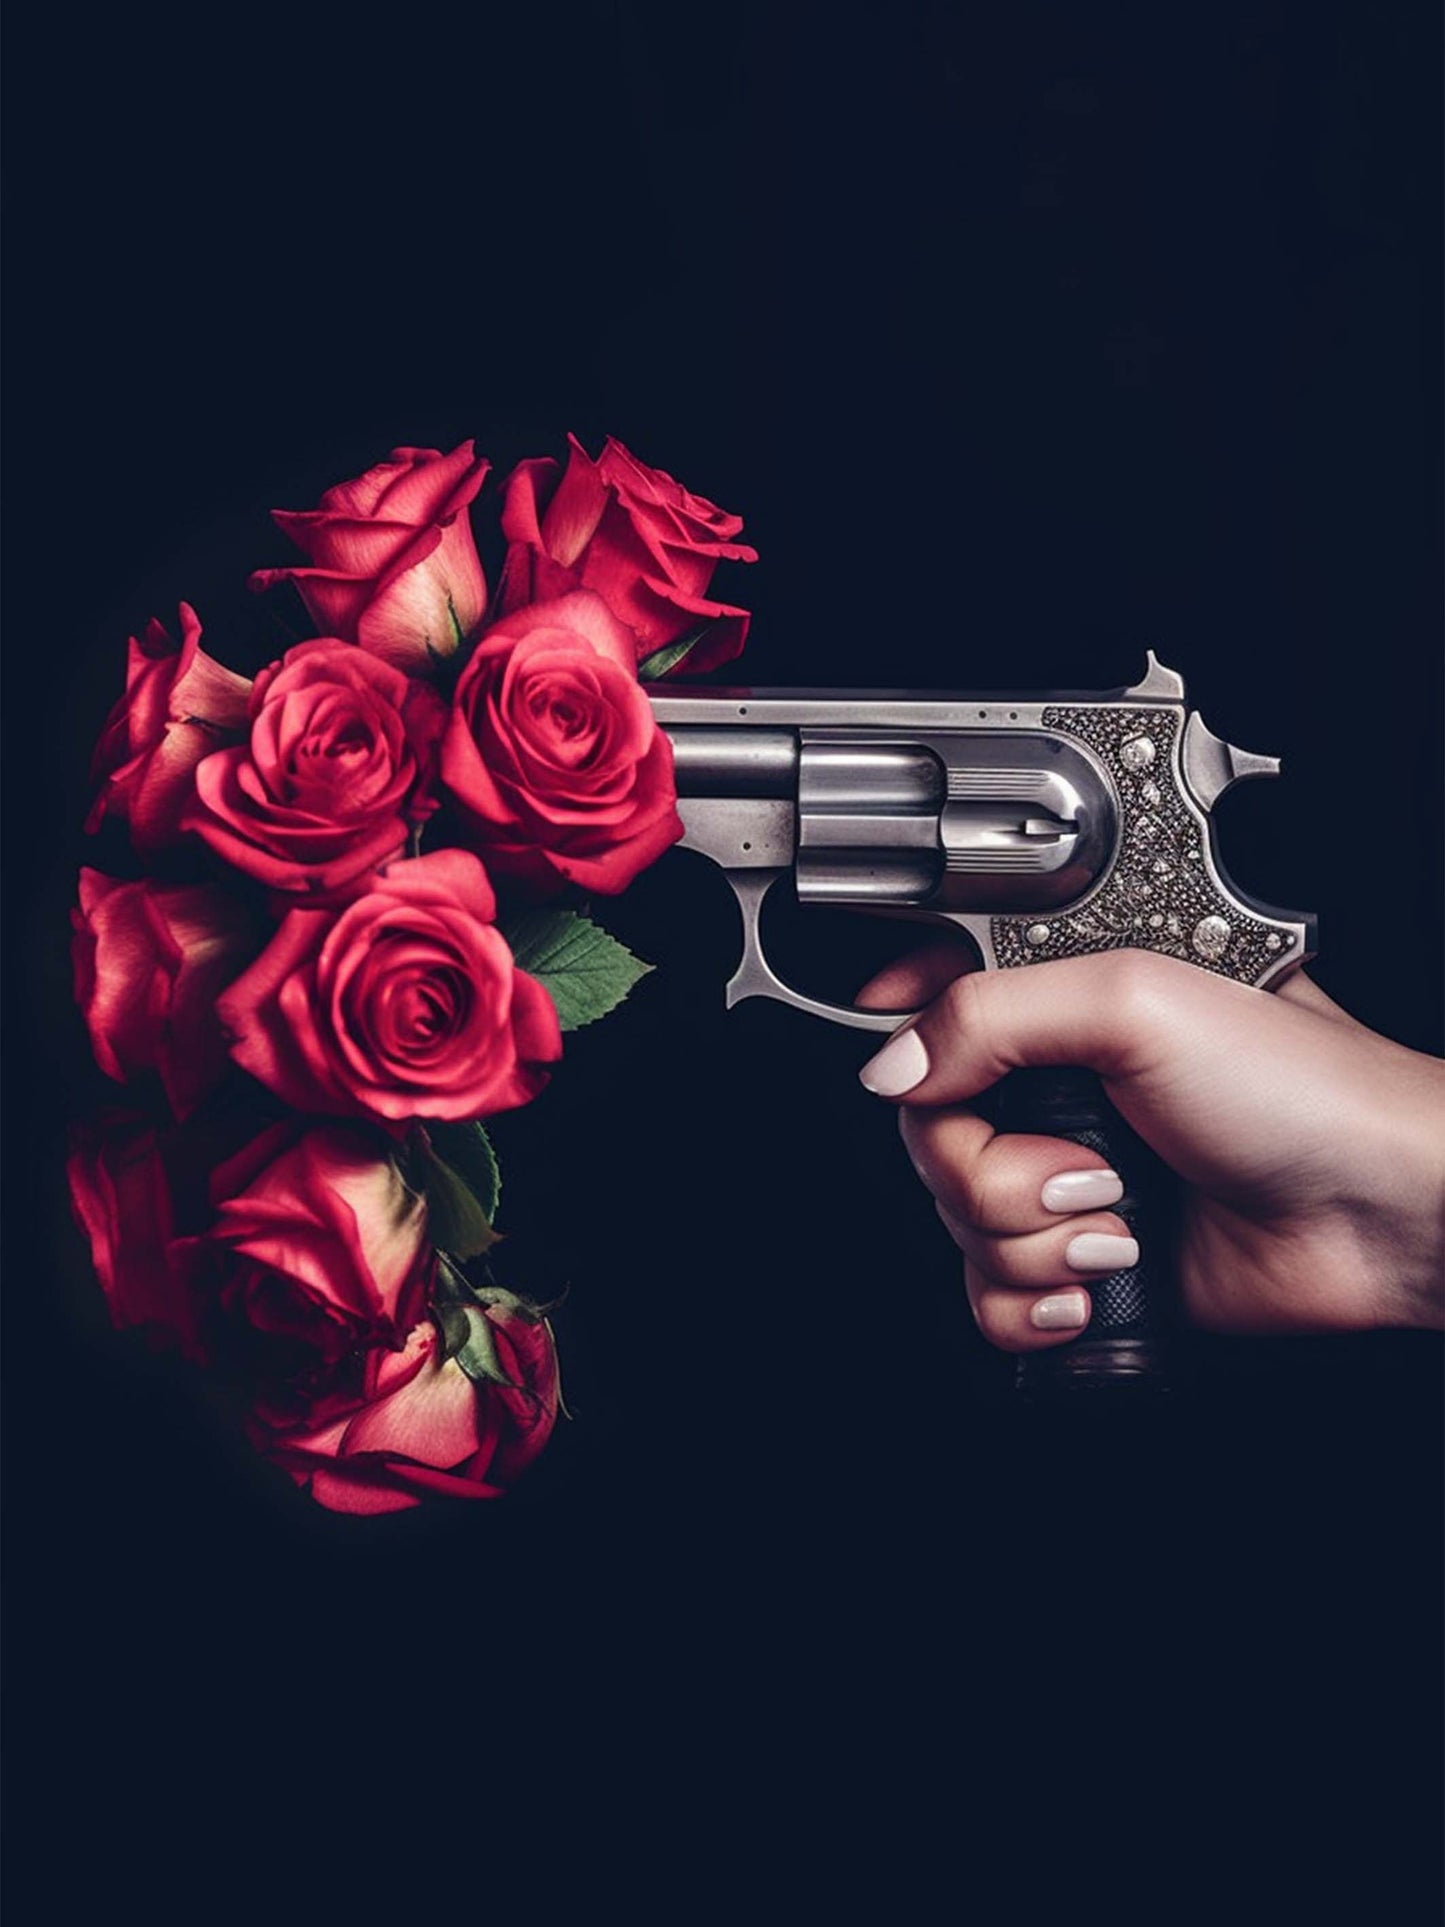 Tableau Revolver : une main surgit du noir, presse la gâchette d'un pistolet d'où s'échappent non des balles, mais des roses éclatantes.